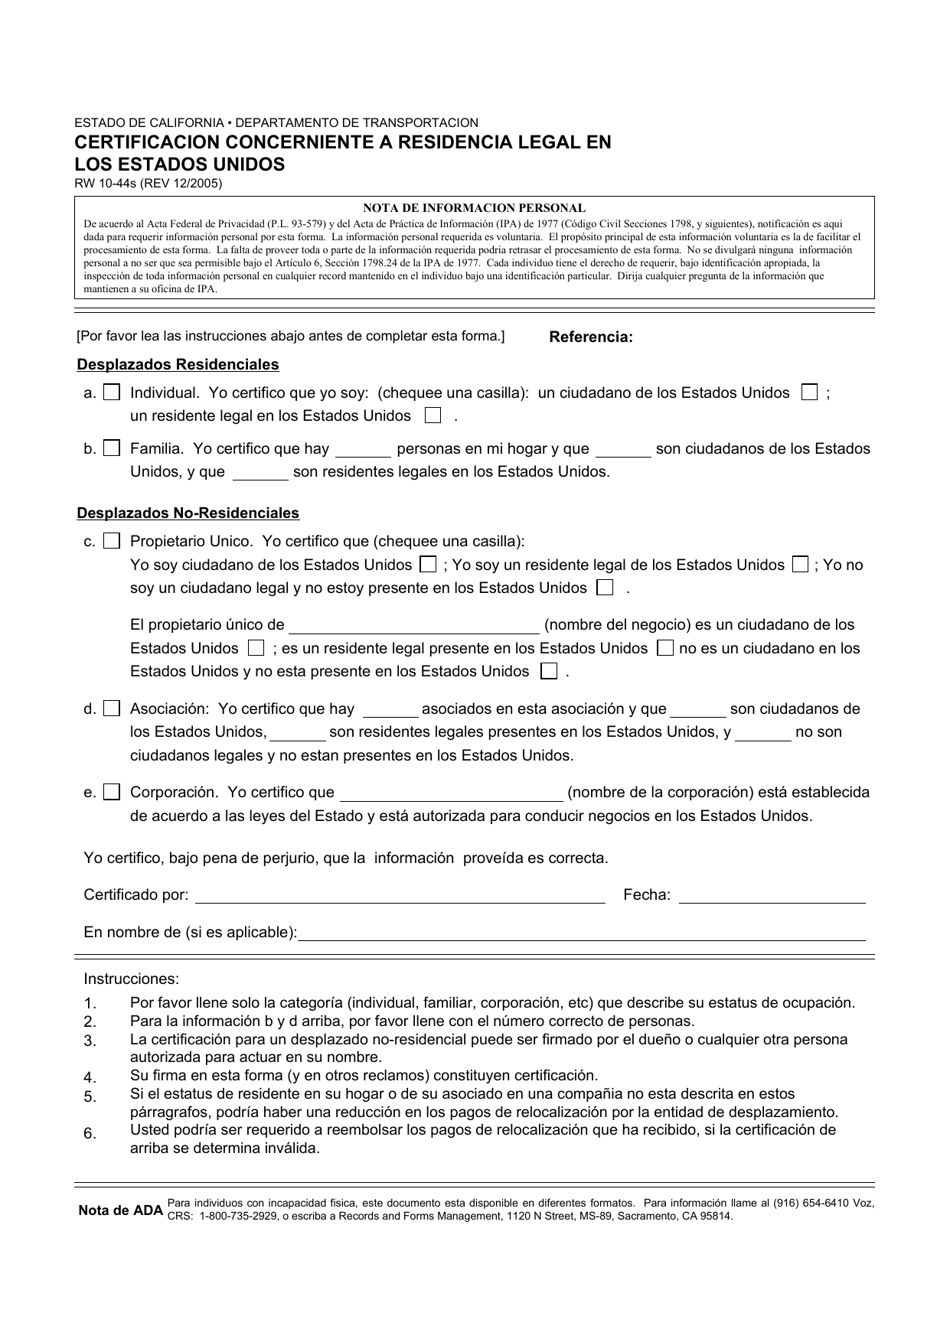 Formulario RW10-44S Certificacion Concerniente a Residencia Legal En Los Estados Unidos - California (Spanish), Page 1